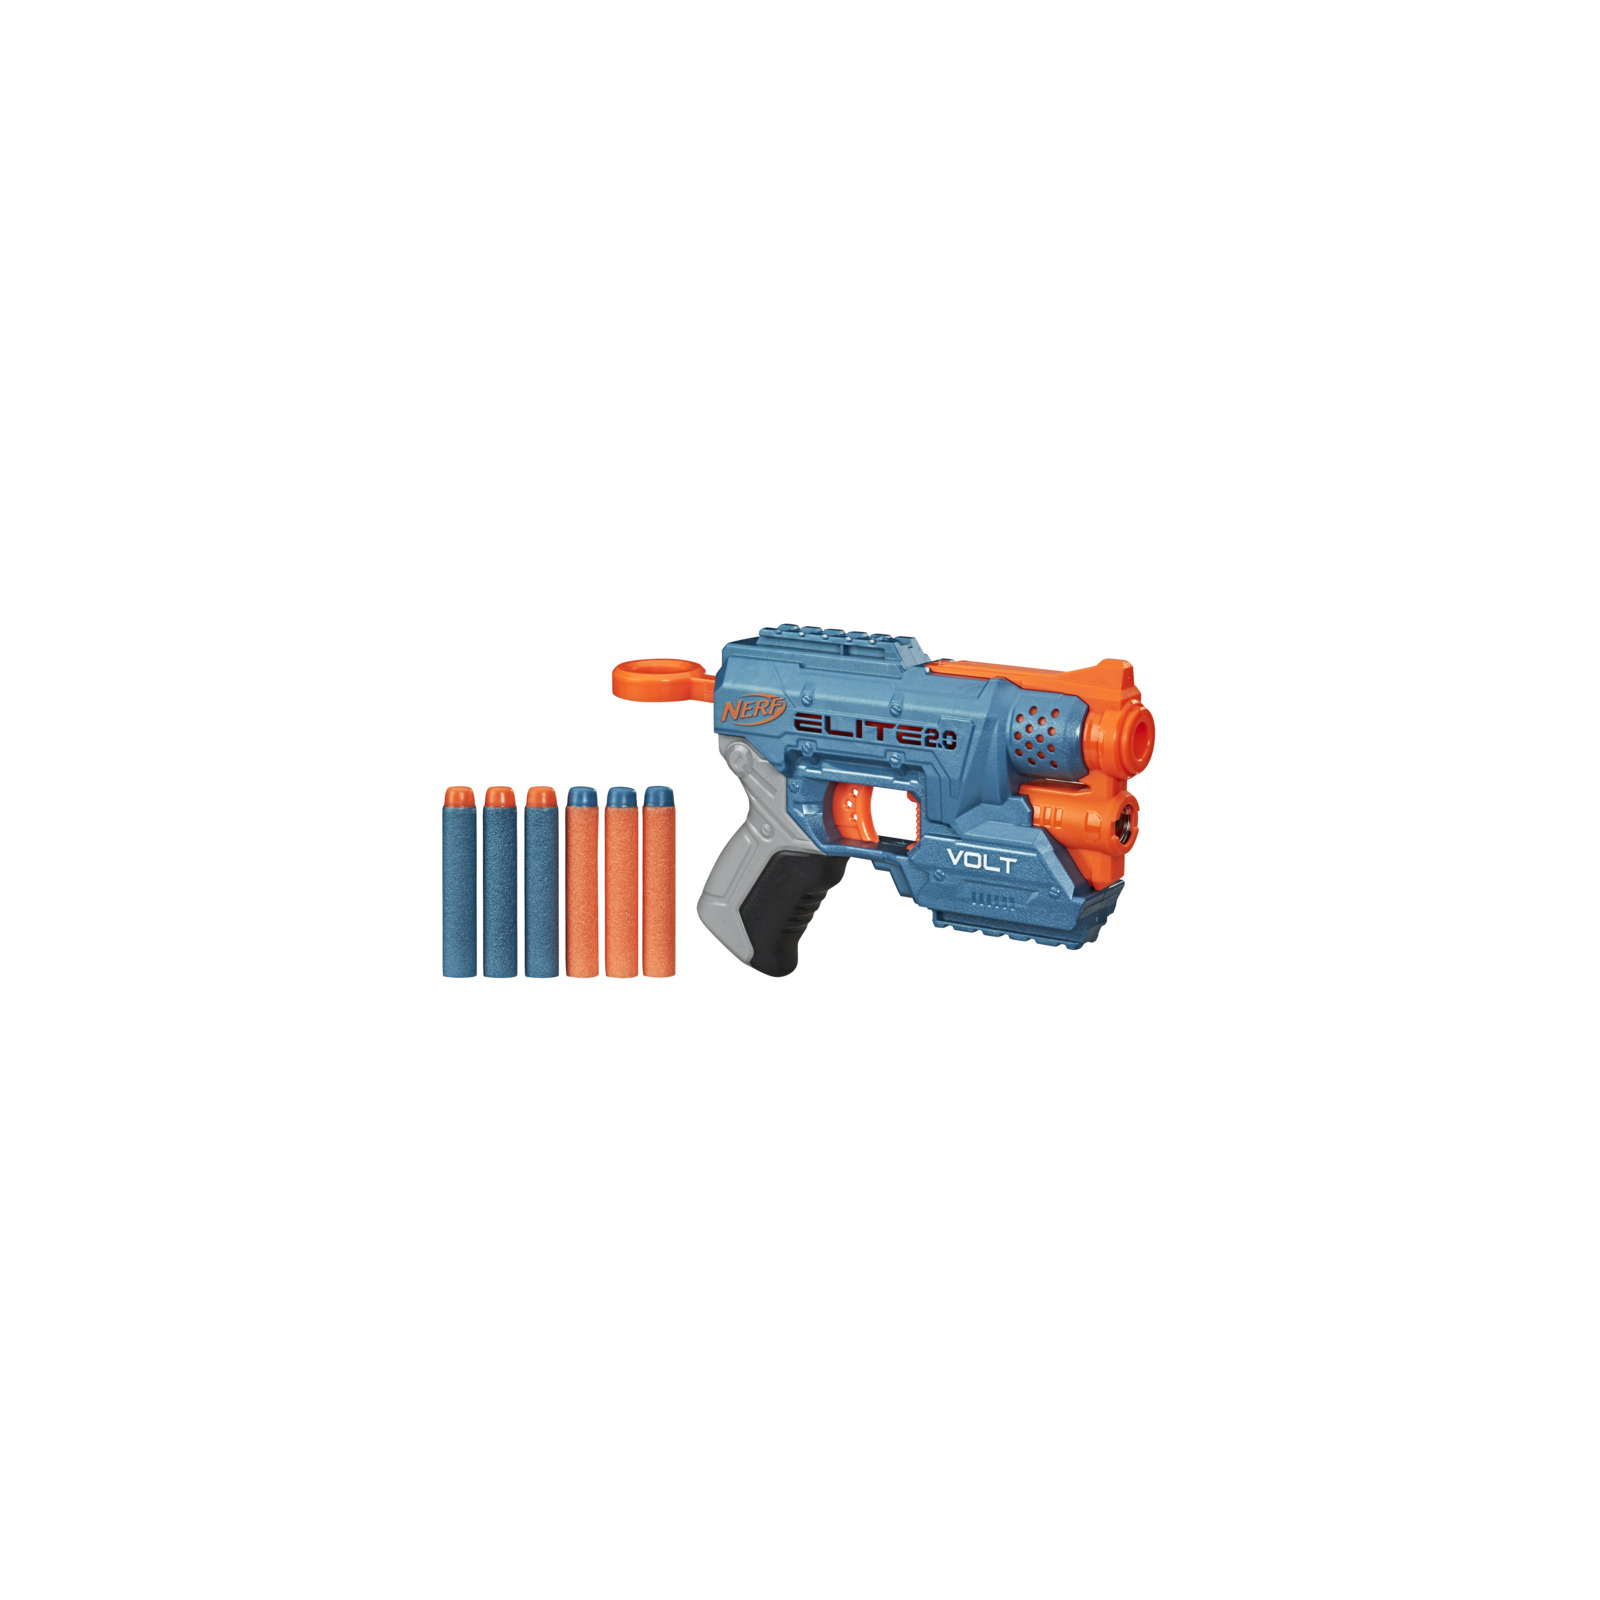 Игрушечное оружие Hasbro Nerf Elite 2.0 Вольт (E9952) изображение 3